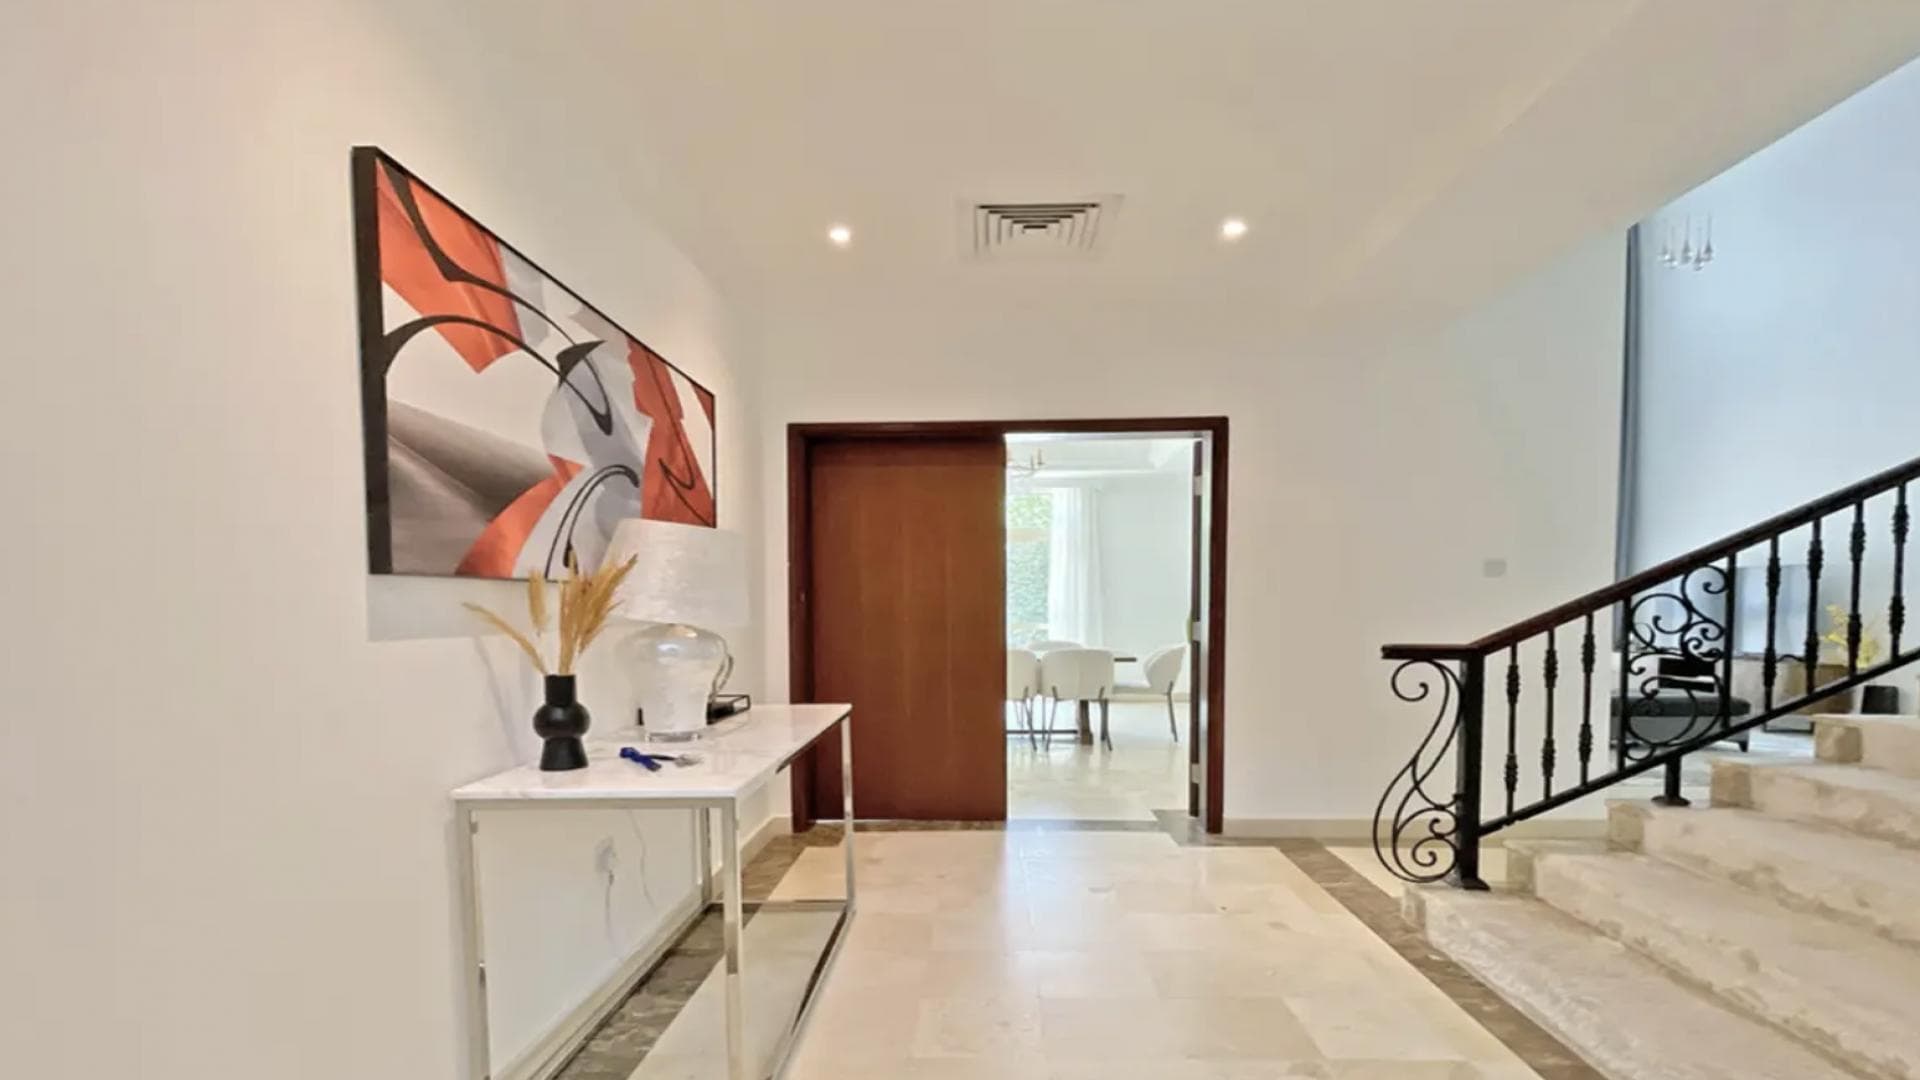 4 Bedroom Villa For Rent Al Thamam 13 Lp34806 1922fb1037cde700.png